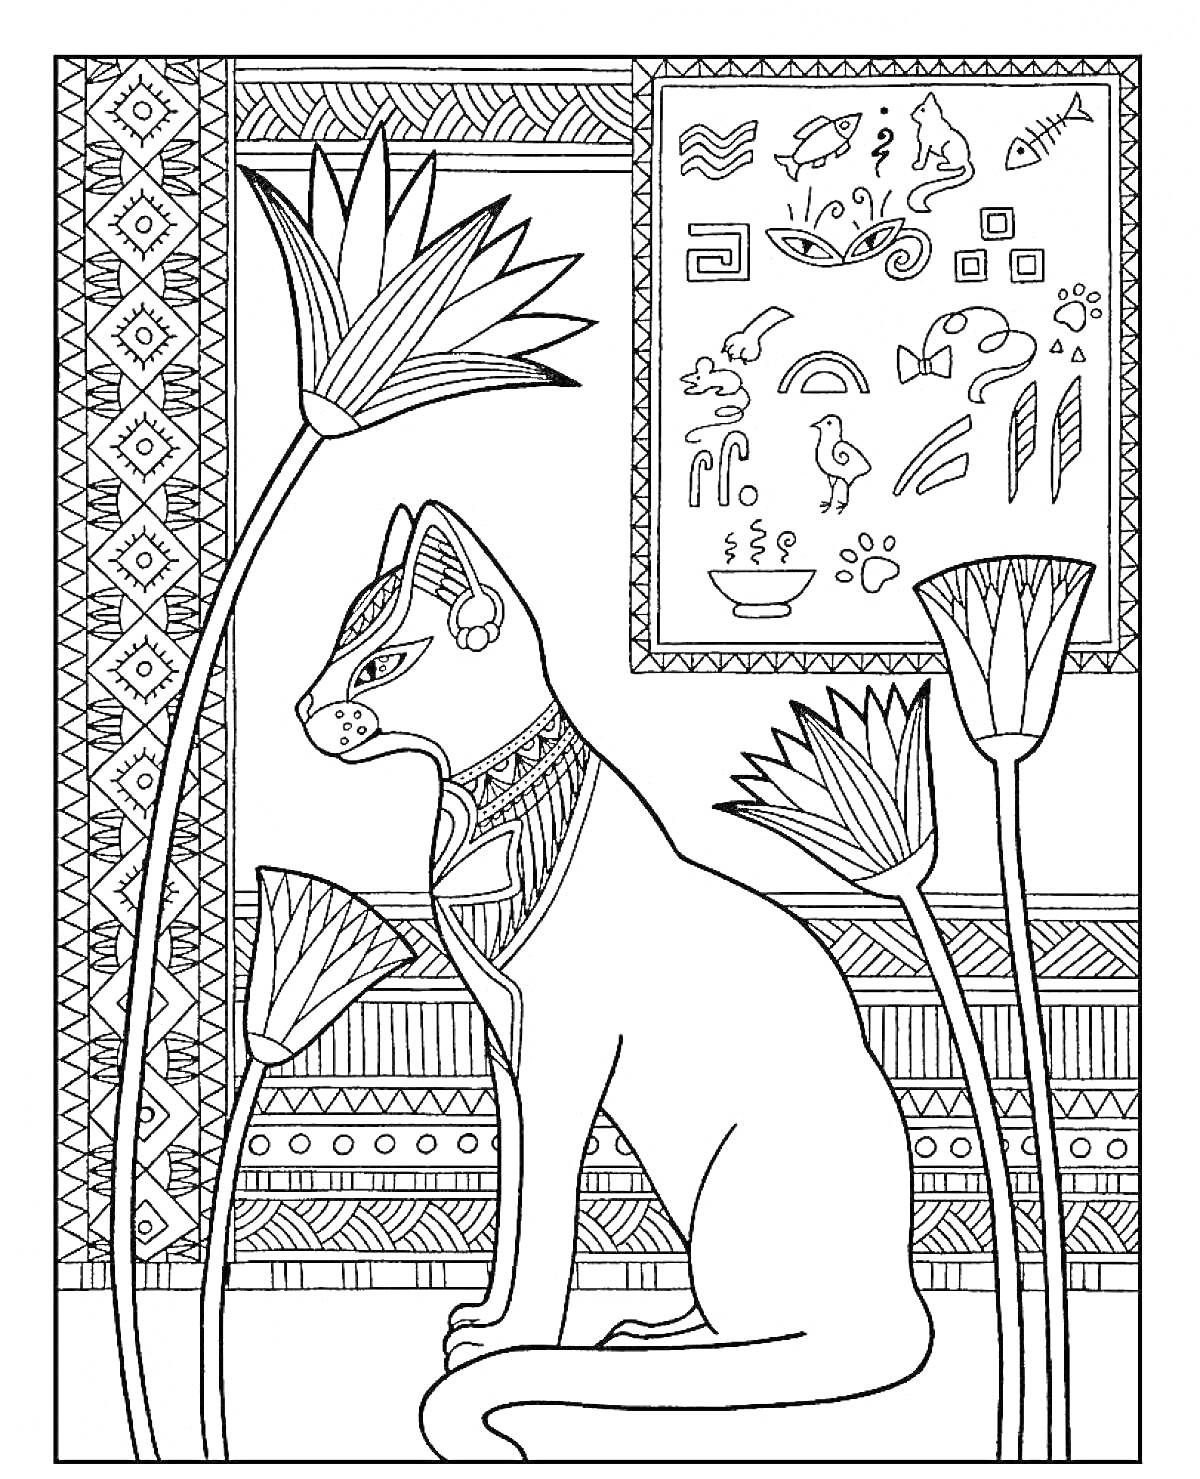 Кошка с египетскими украшениями, папирус, египетские иероглифы на заднем плане